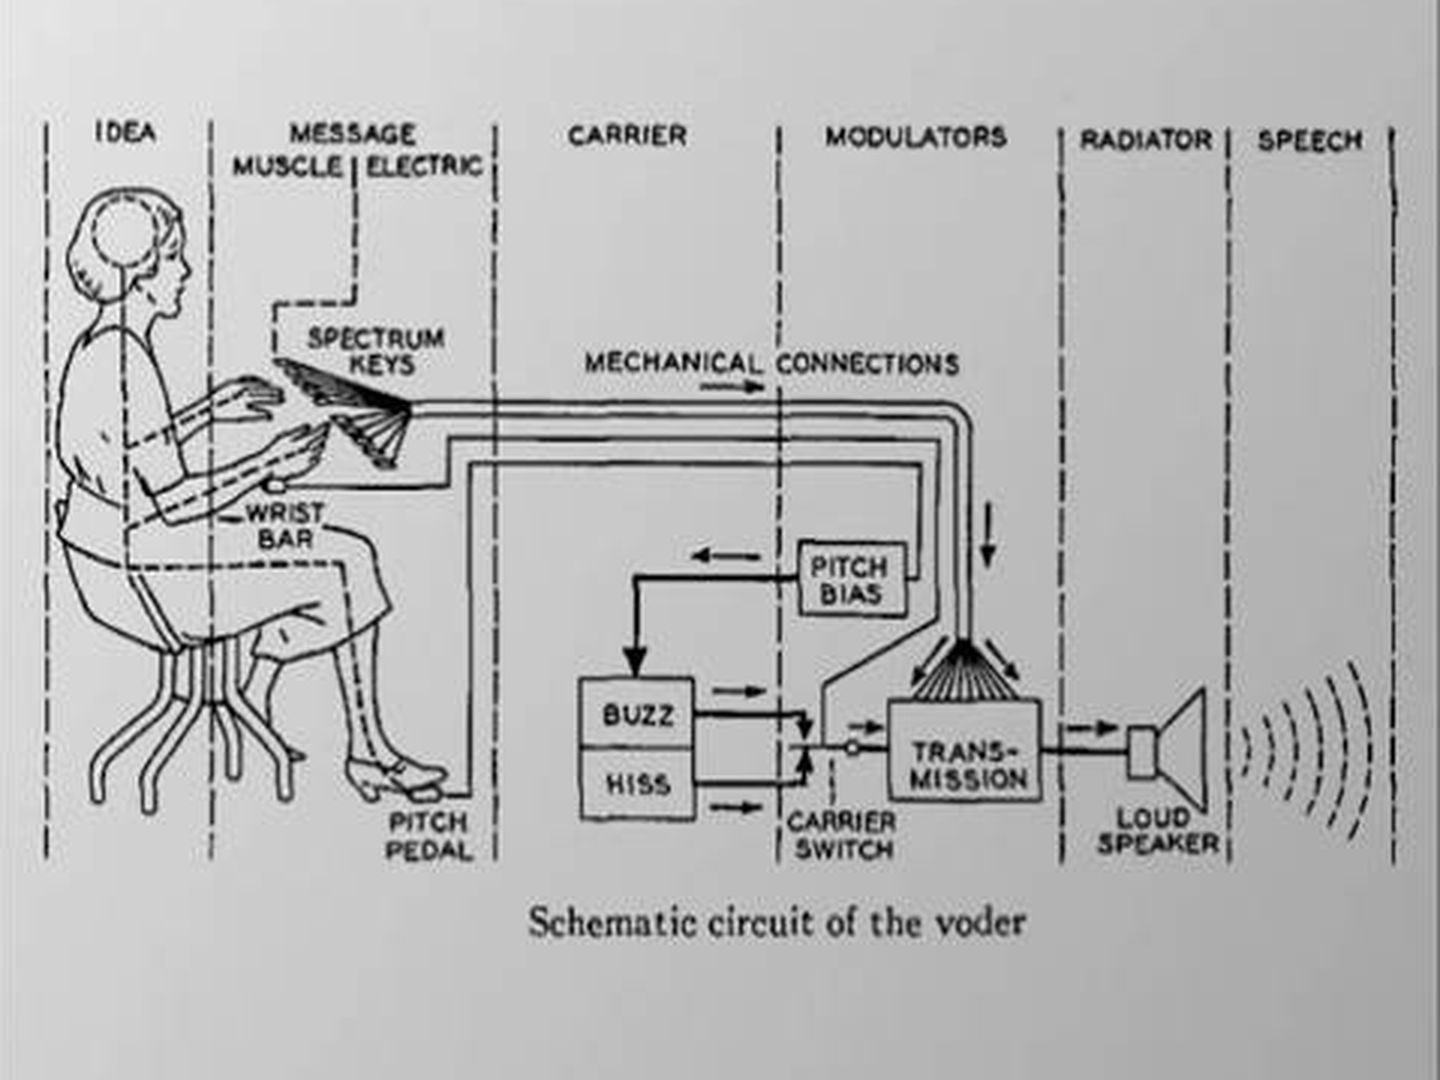 Circuito de funcionamiento del Voder (Bell Labs)